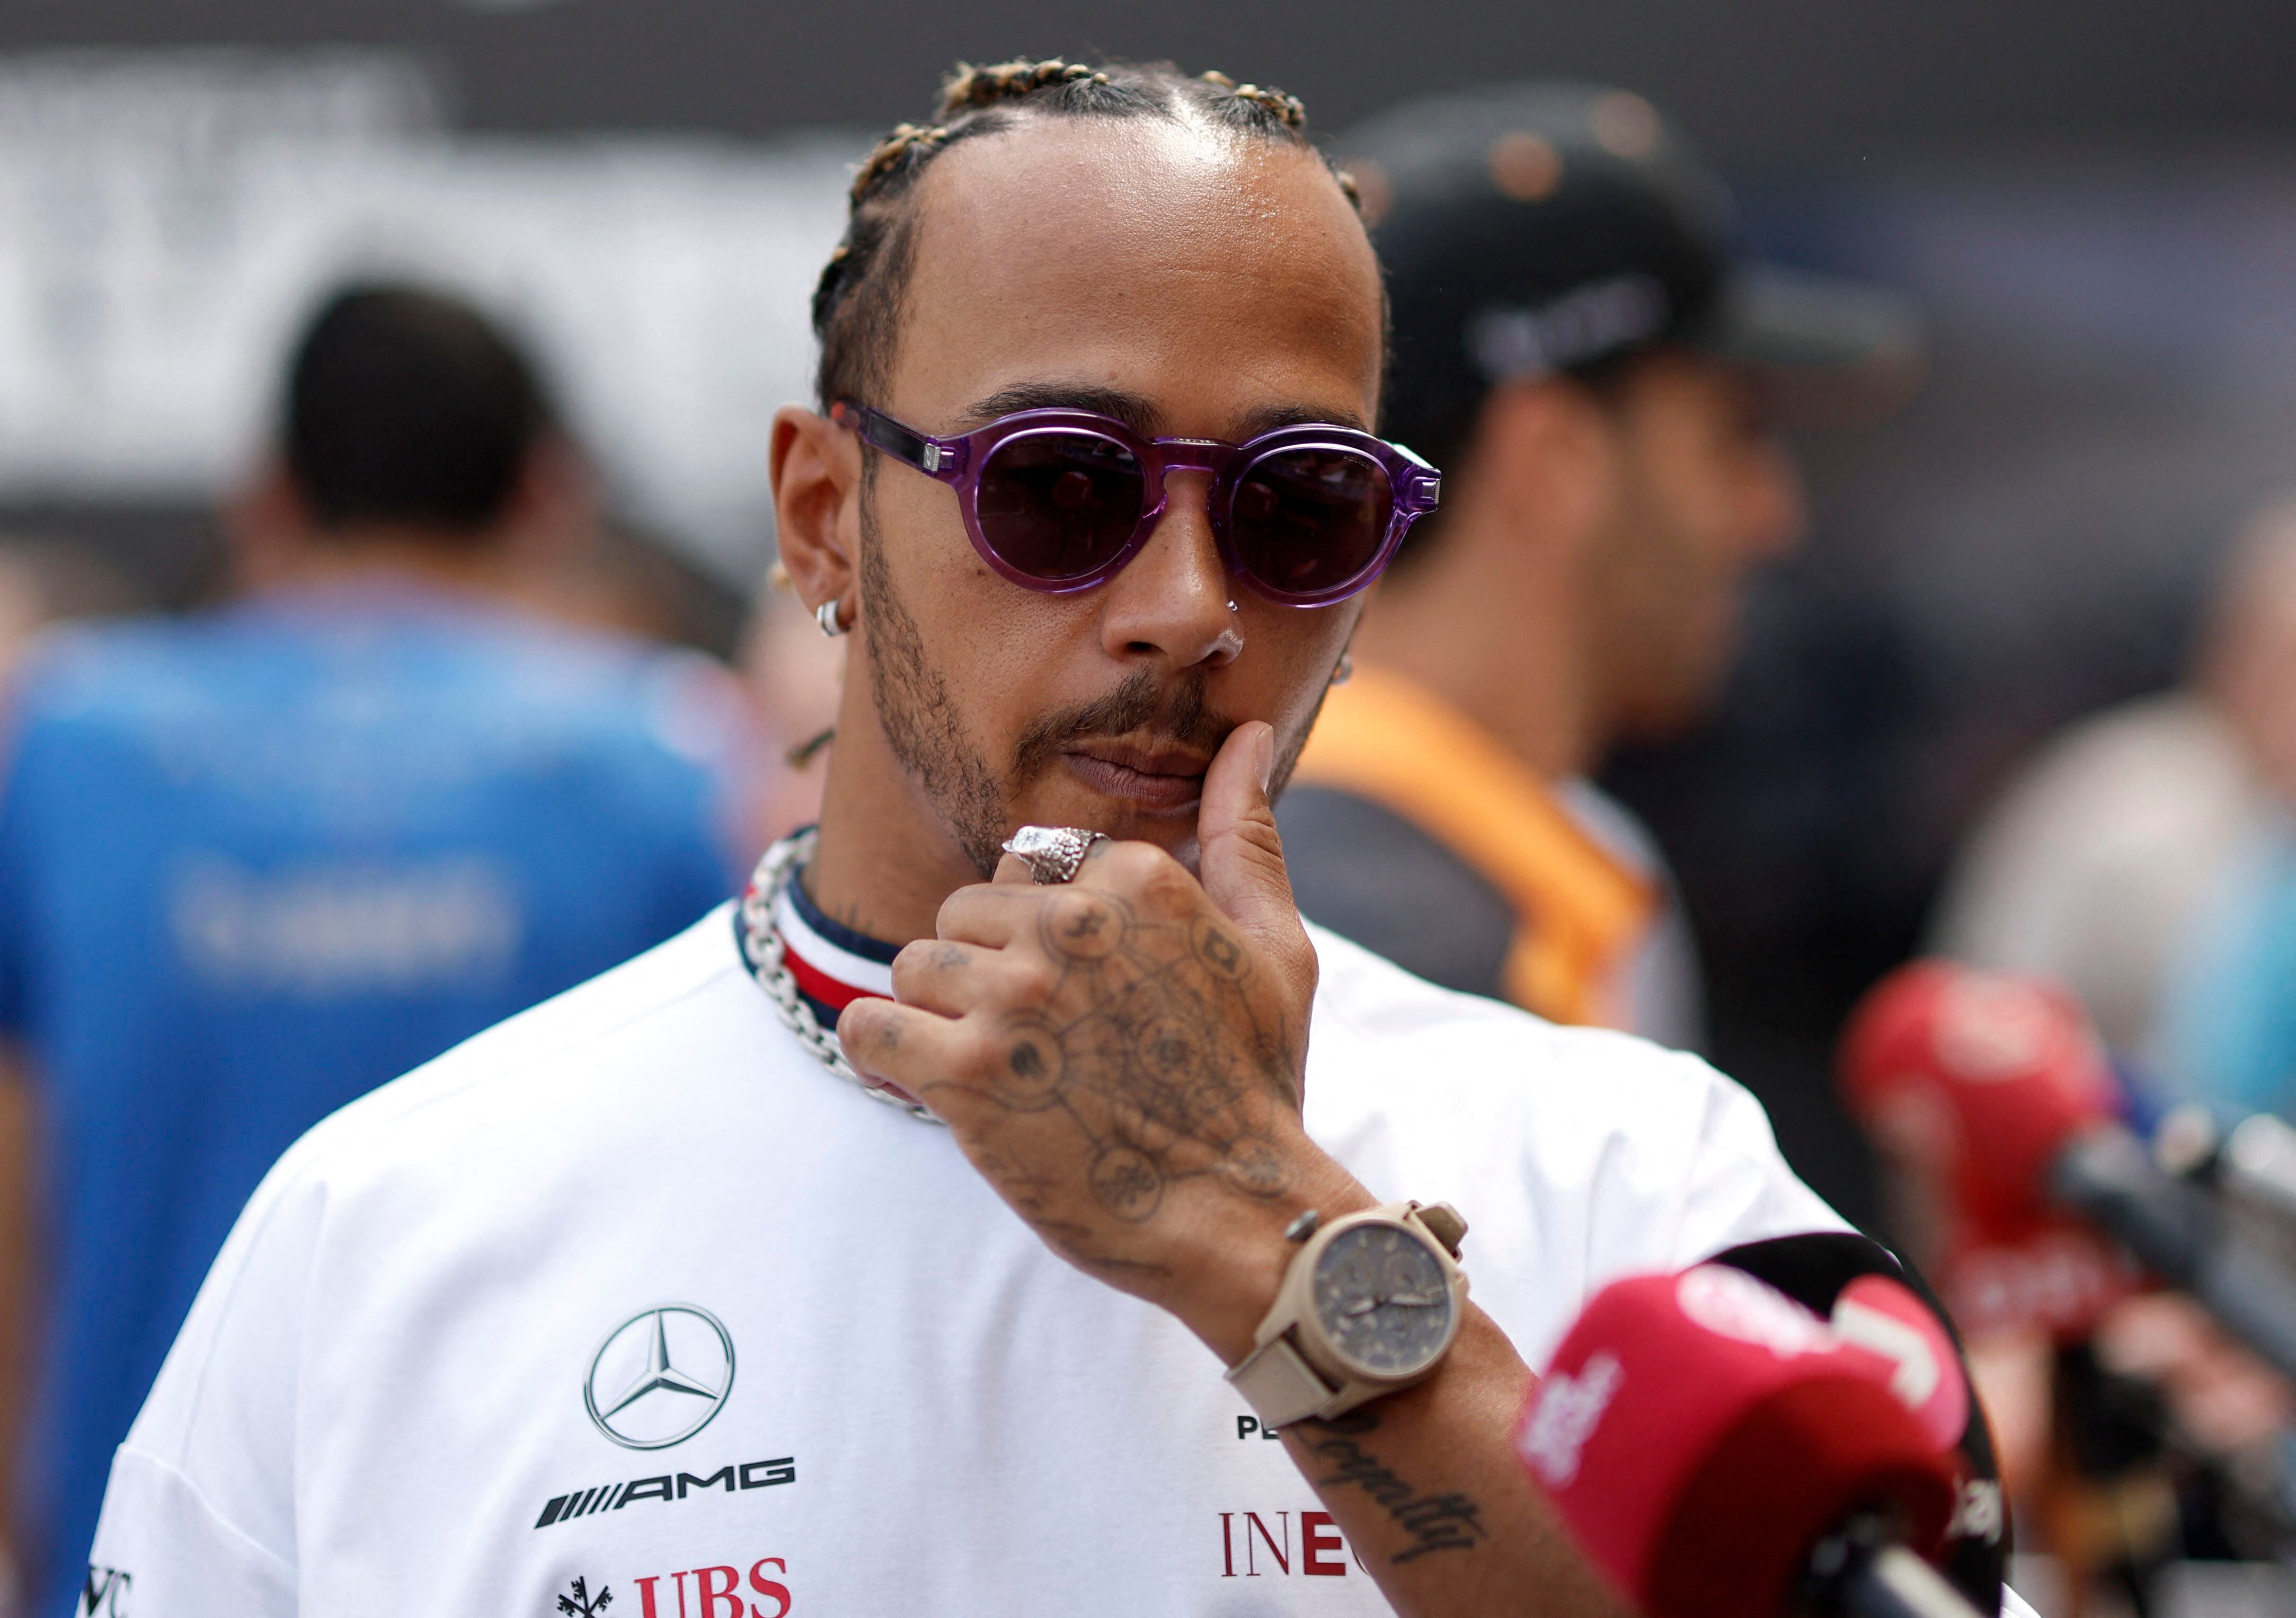 Lewis Hamilton ocupa el sexto lugar del Mundial de pilotos (Reuters)